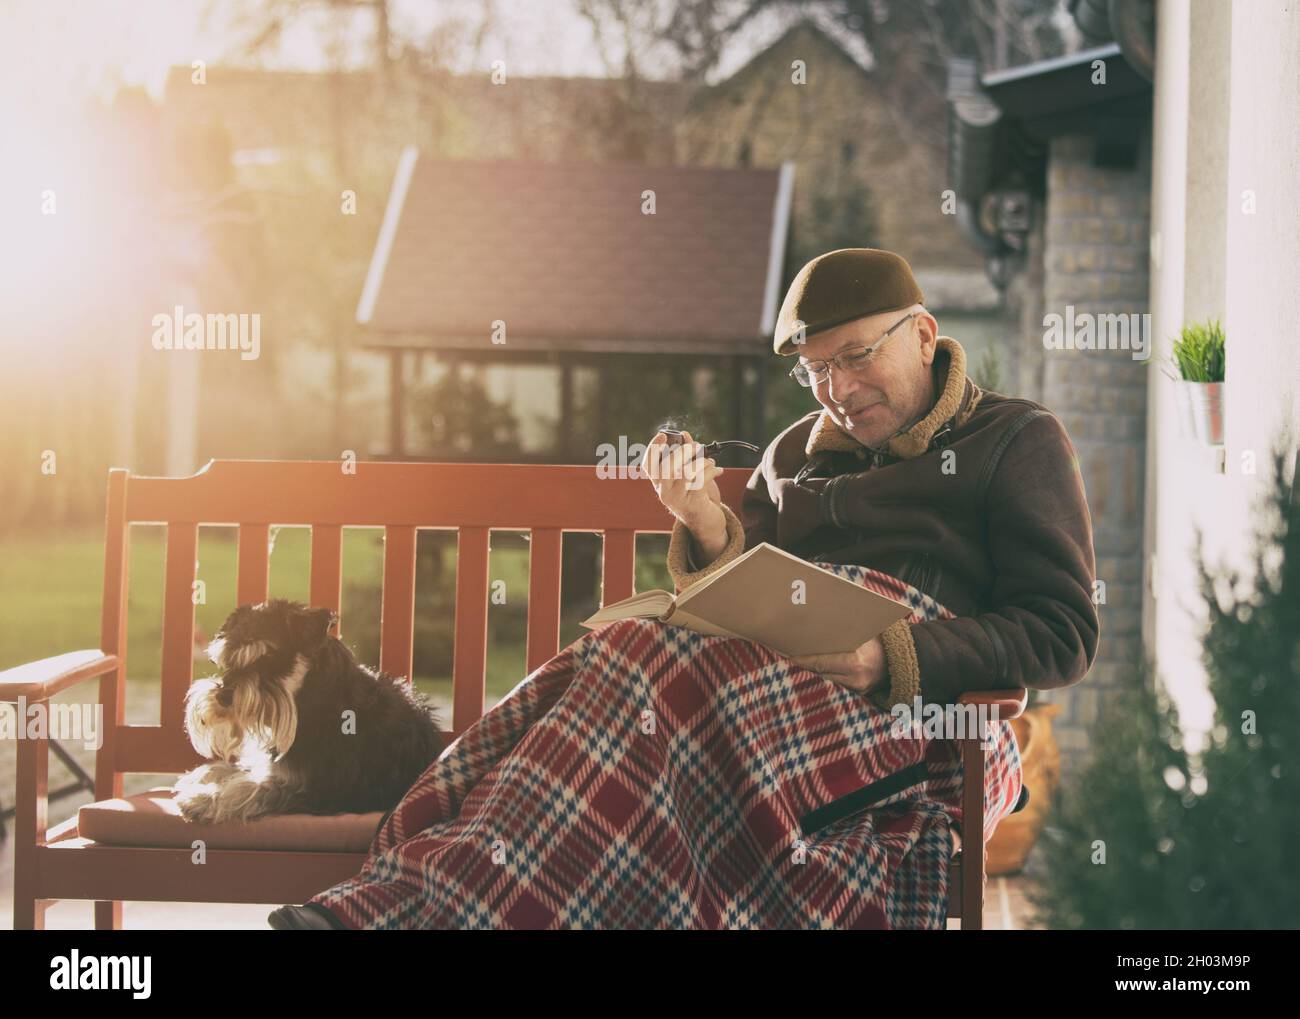 Älterer Mann, der auf einer Bank im Garten sitzt, der mit einer Decke bedeckt ist und ein Buch liest, Pfeife raucht und einen kuscheligen Hund hat Stockfoto